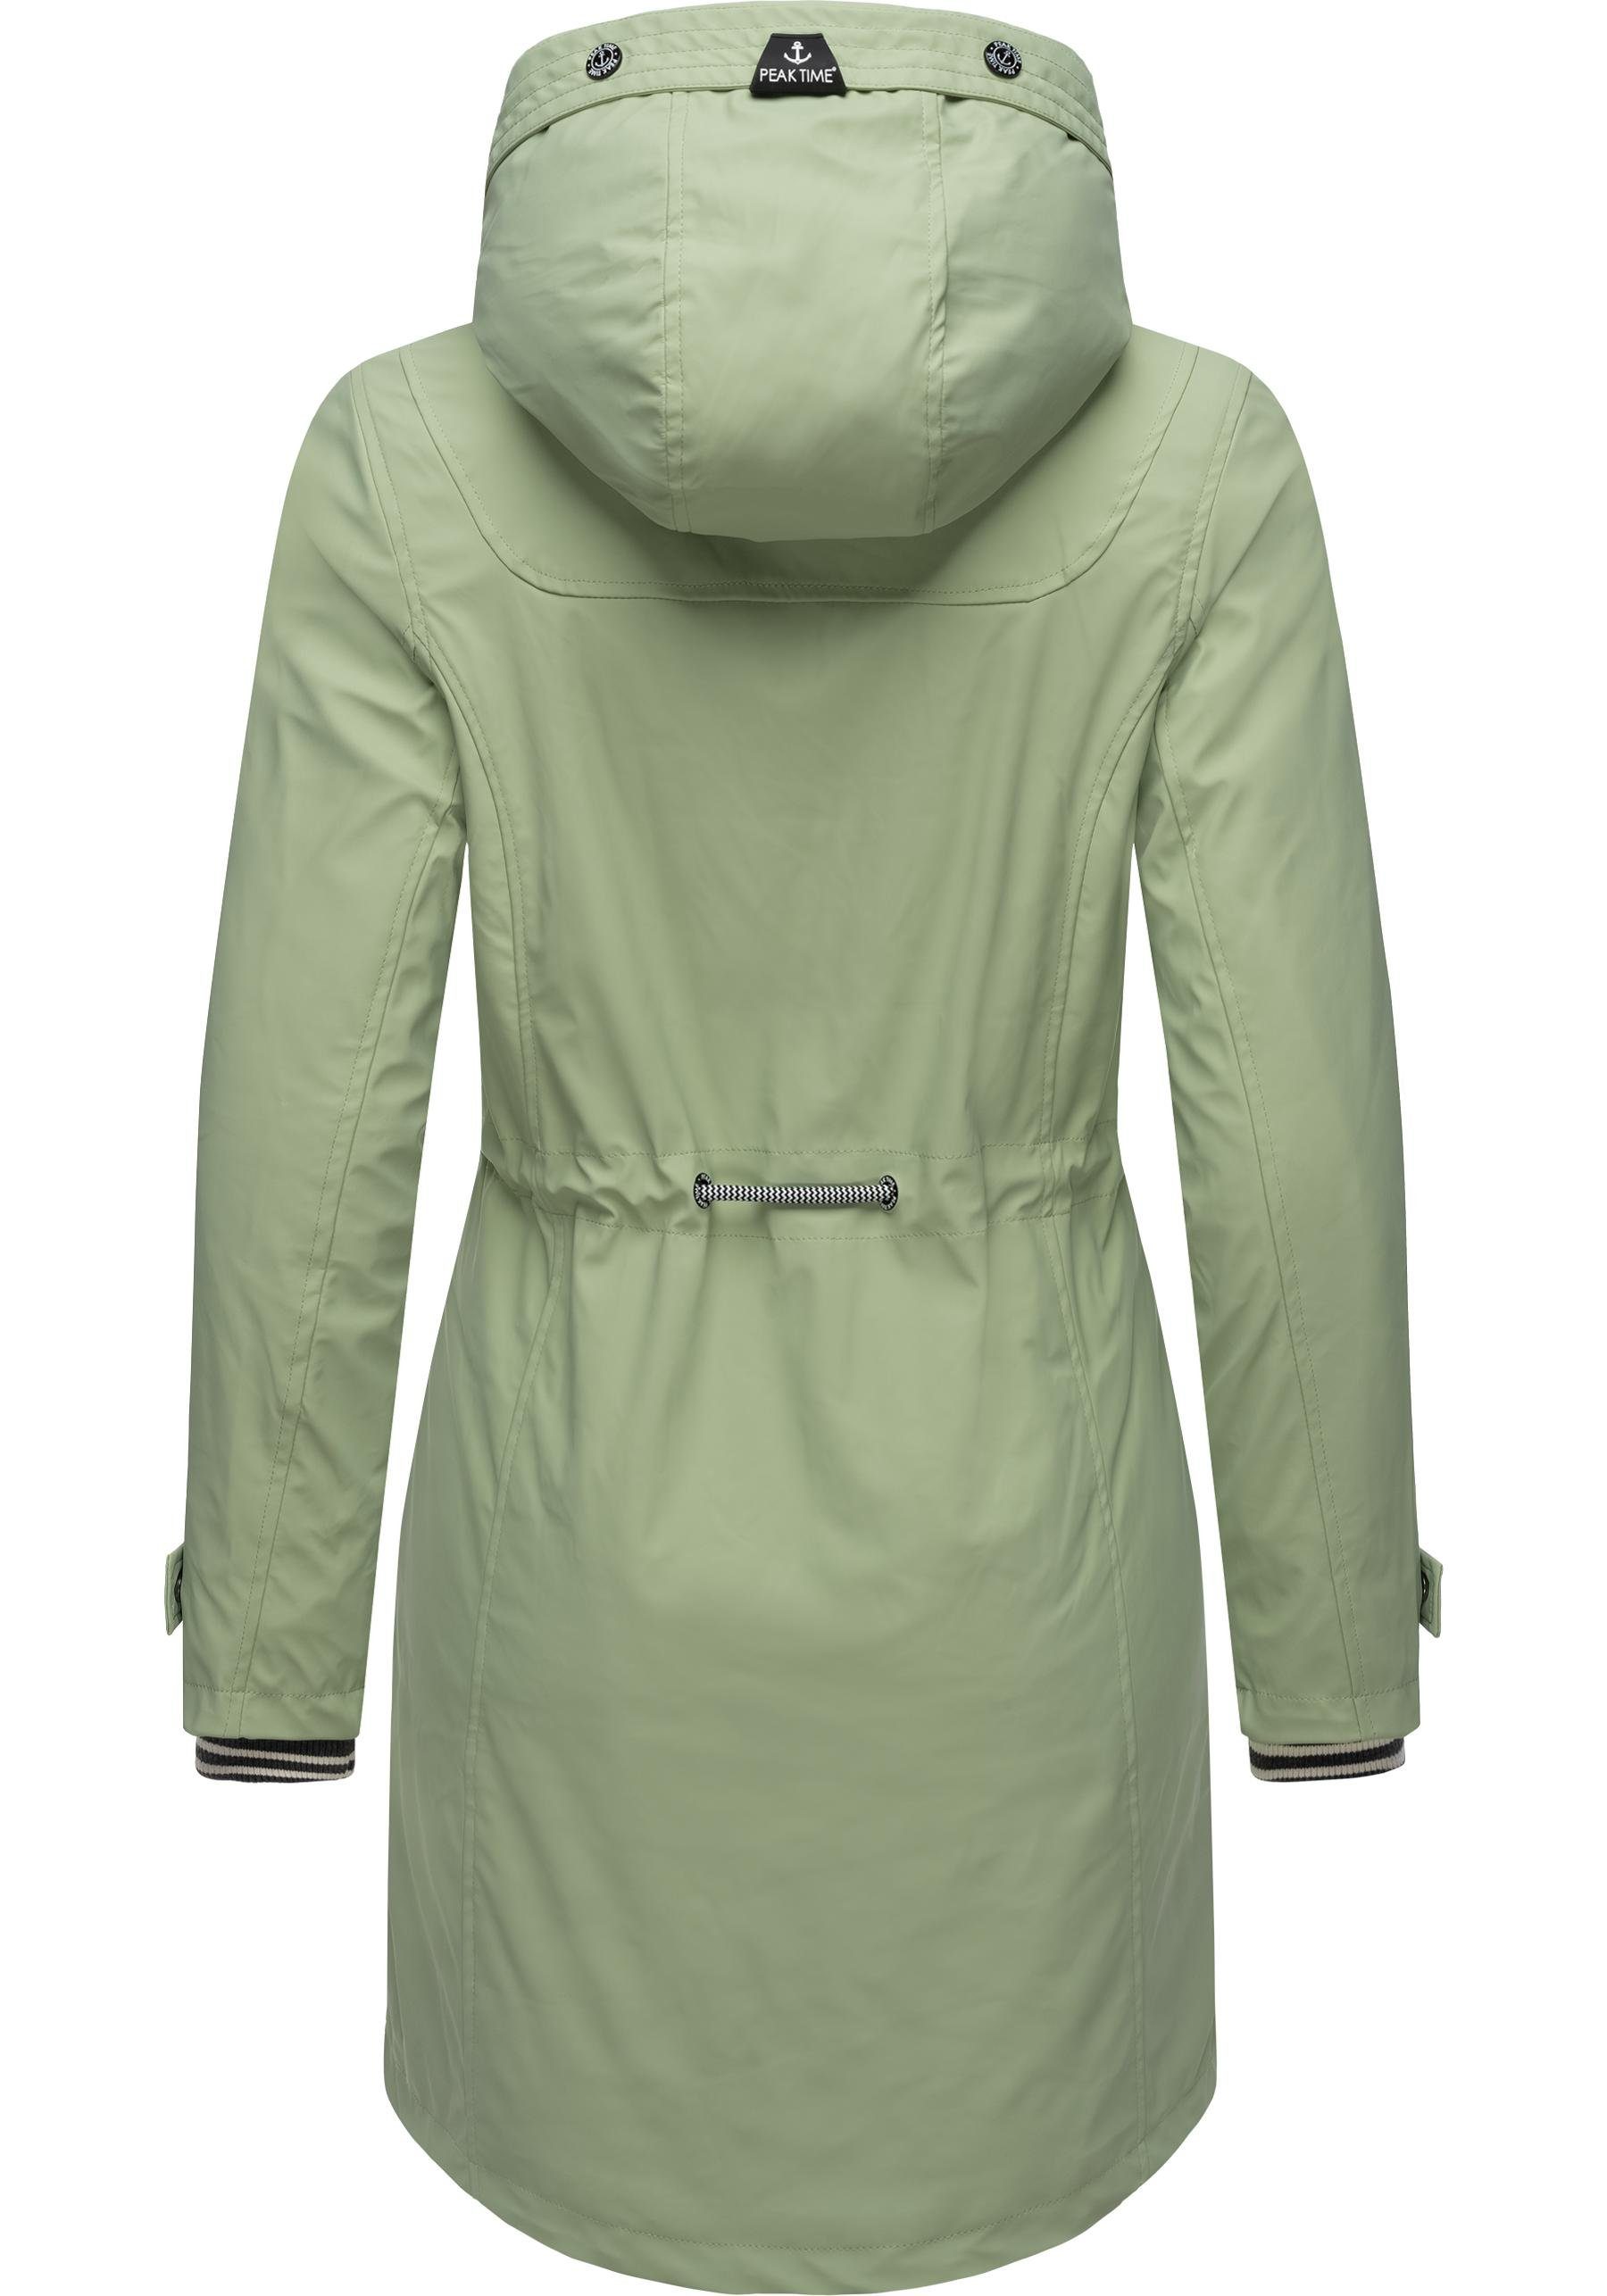 TIME L60042 für Damen Regenjacke taillierter Regenmantel stylisch hellgrün PEAK